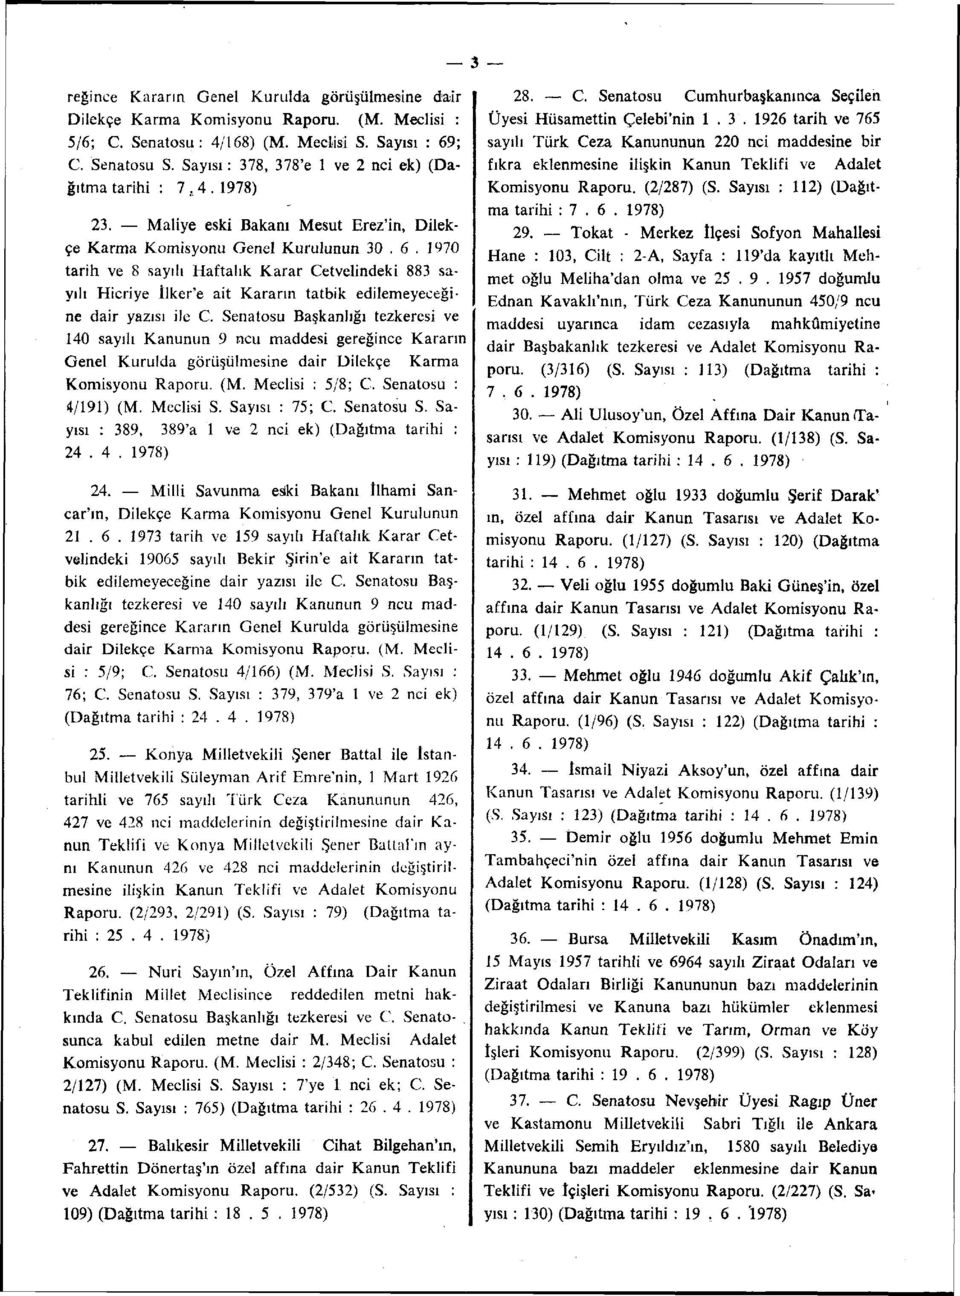 1970 tarih ve 8 sayılı Haftalık Karar Cetvelindeki 883 sayılı Hicriye İlker'e ait Kararın tatbik edilemeyeceğine dair yazısı ile C.